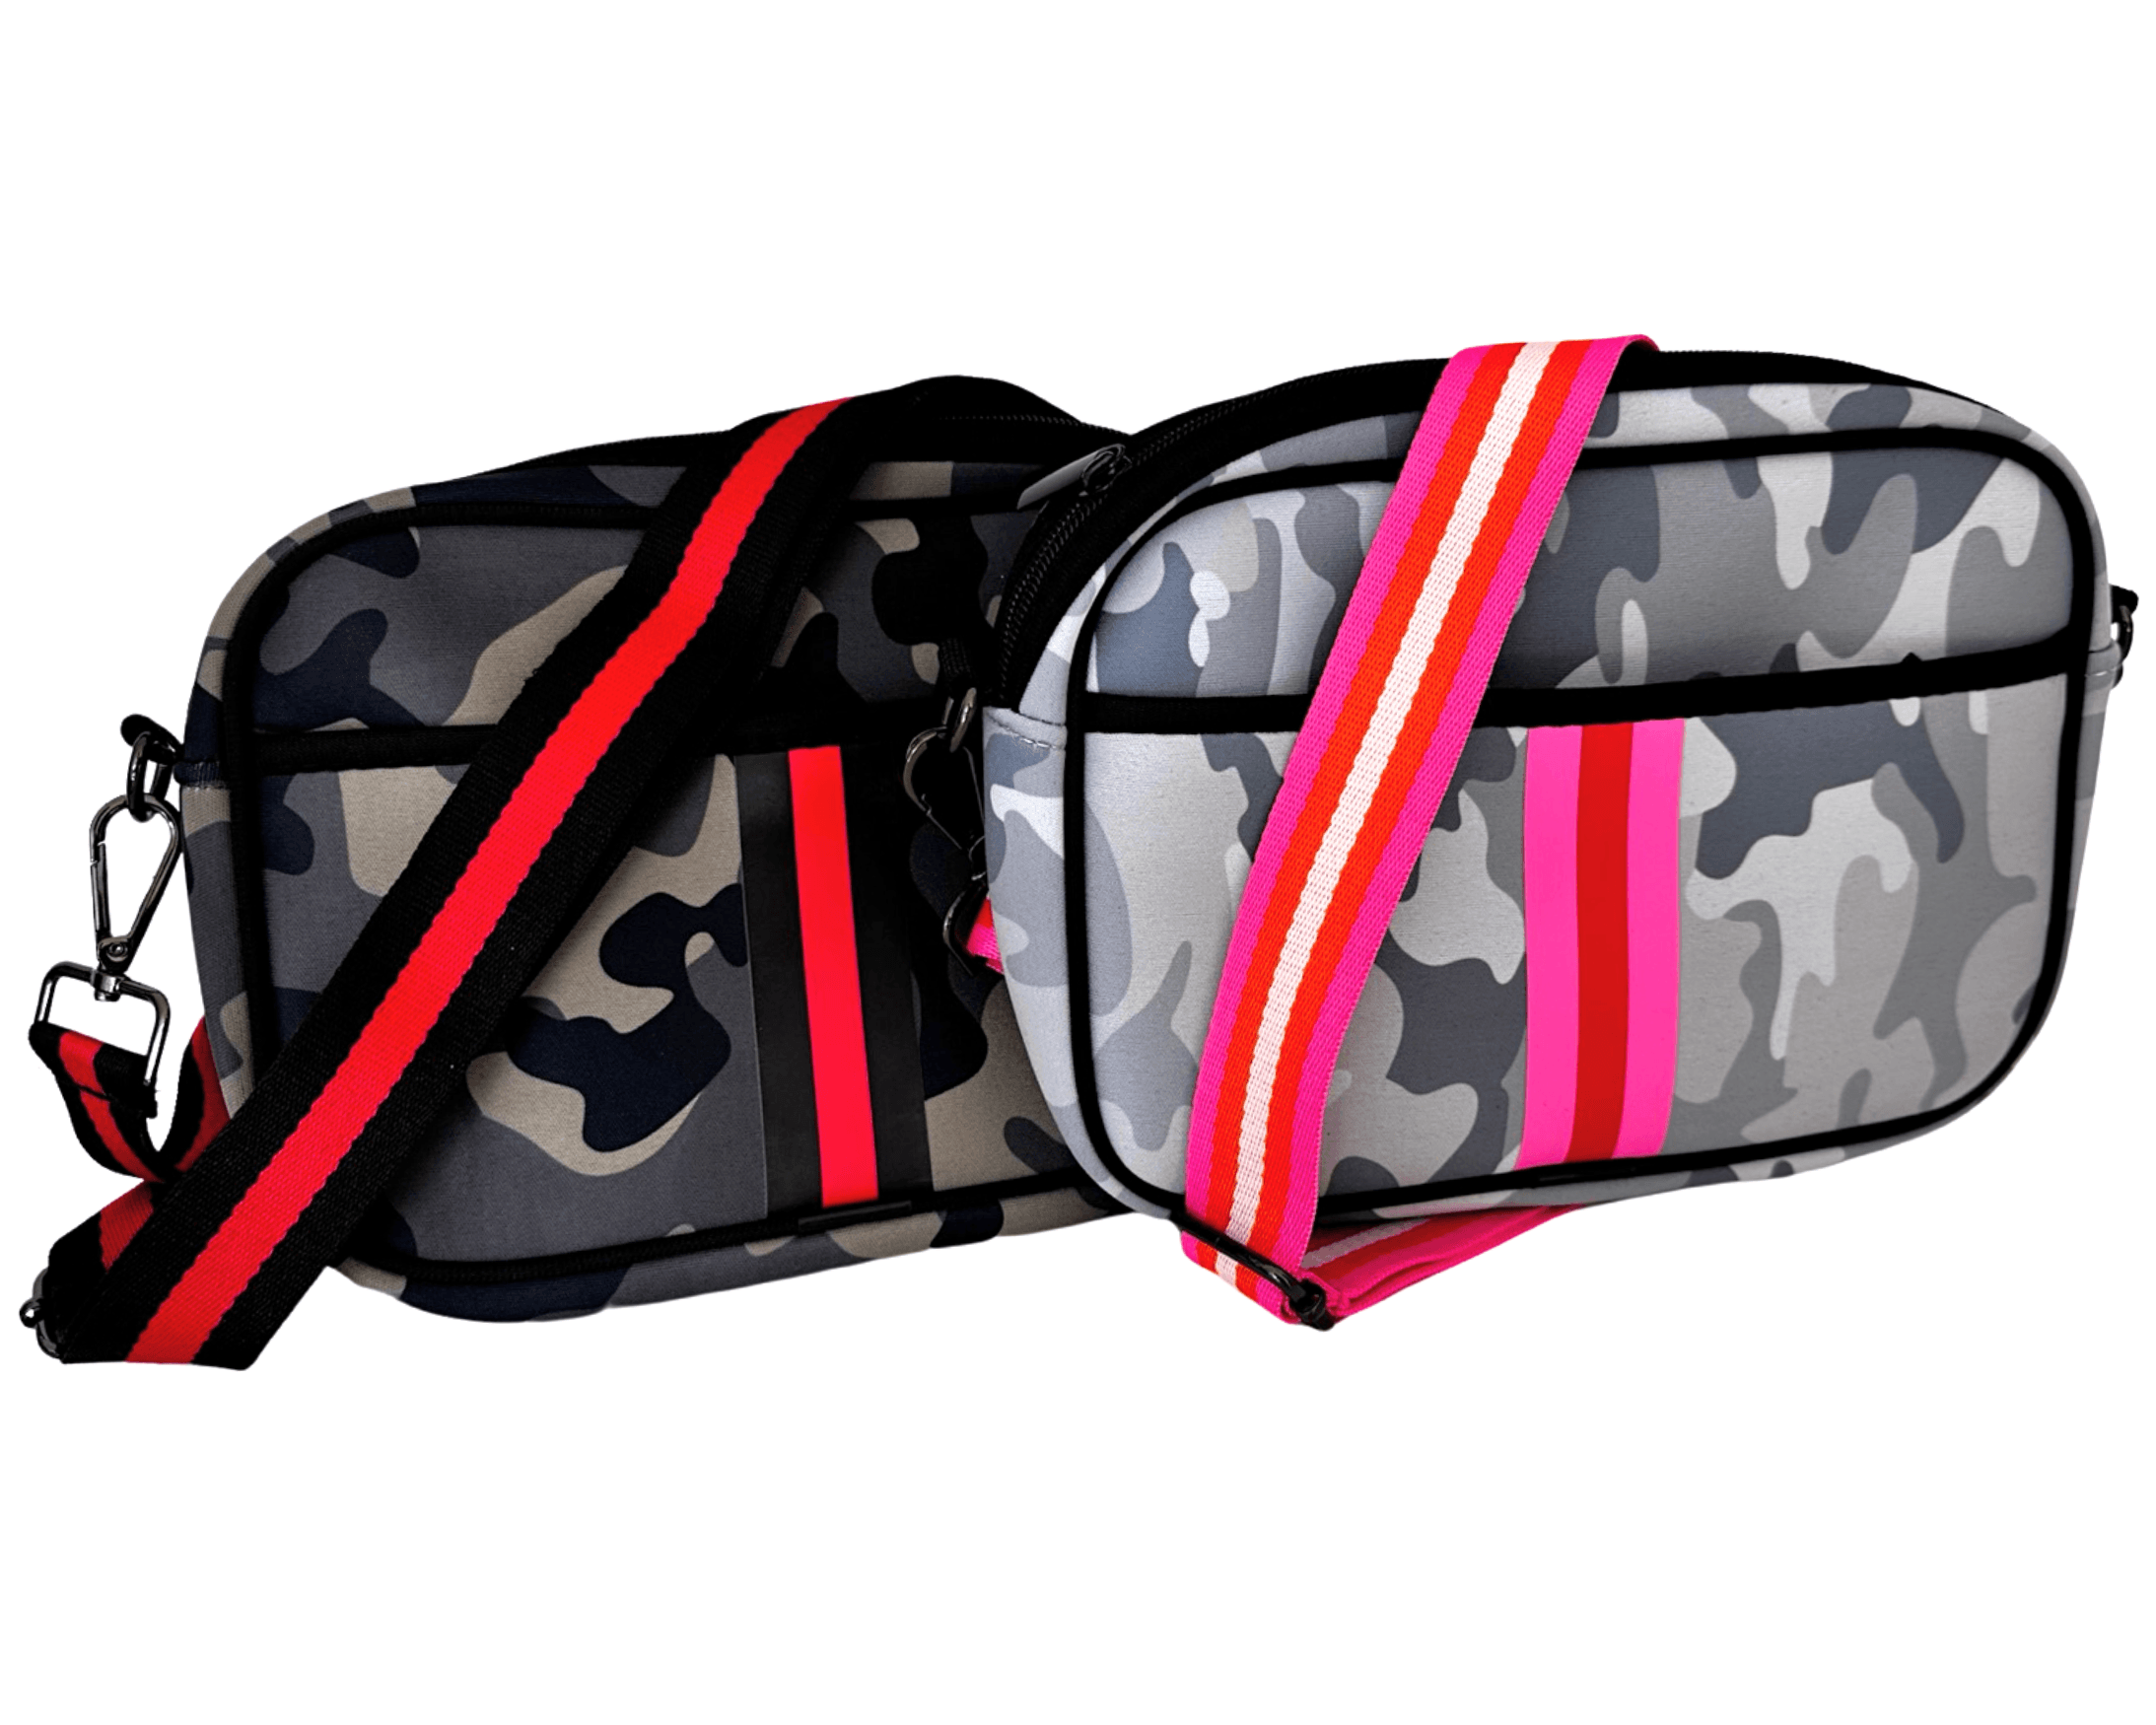 Tasche Cross-Bodybag Neopren | camouflage - Roo's Gift Shop